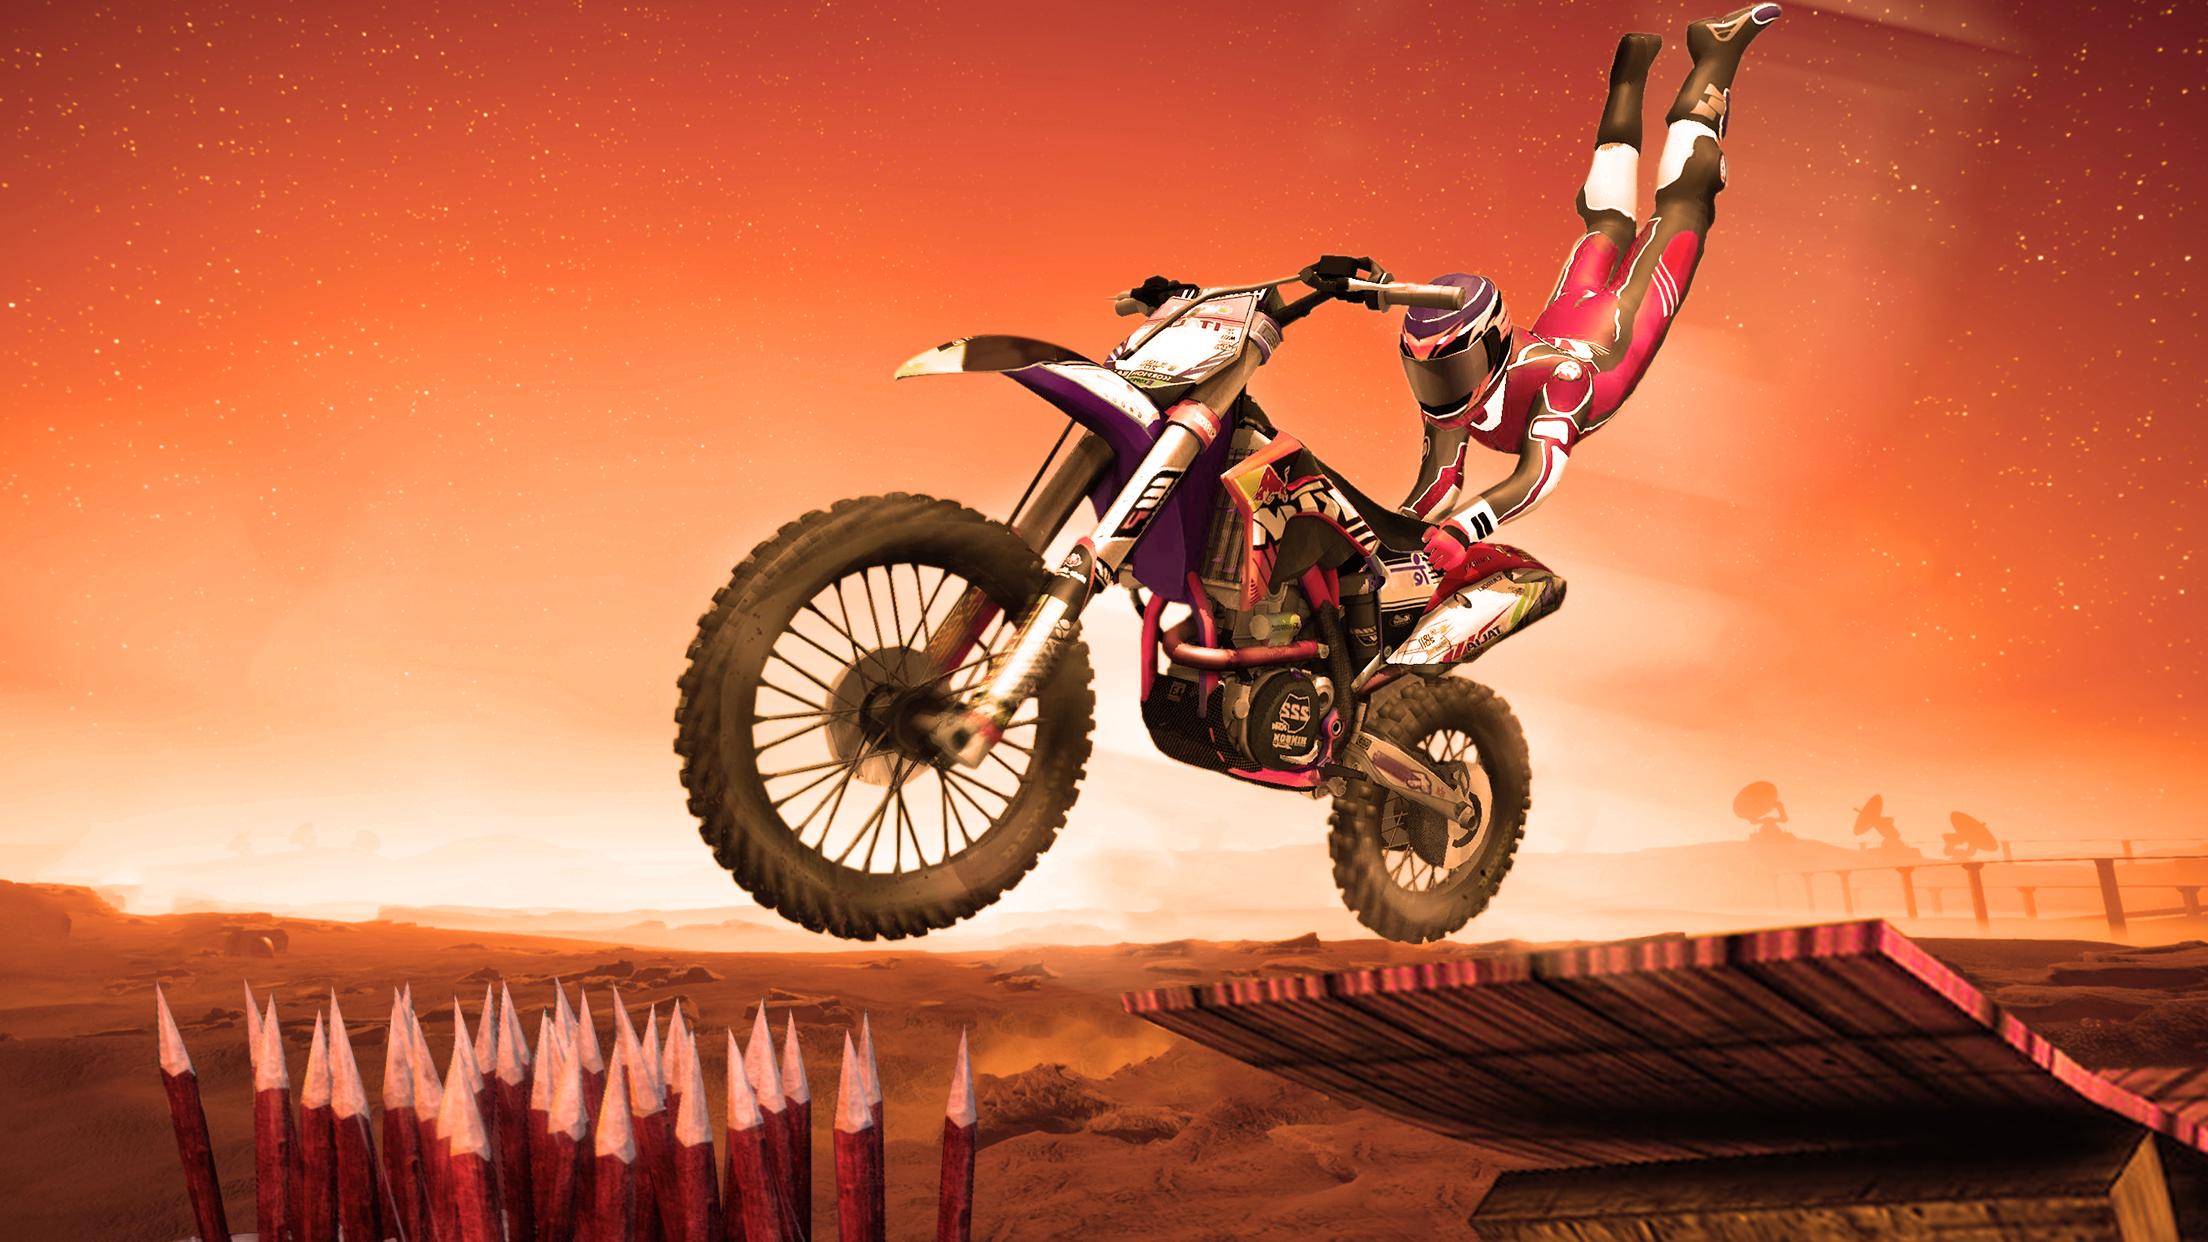 Bike Stunt Games- Free Racing Dirt Bike Games 2020 pour Android ... - Screen 8.jpg?fakeurl=1&type=